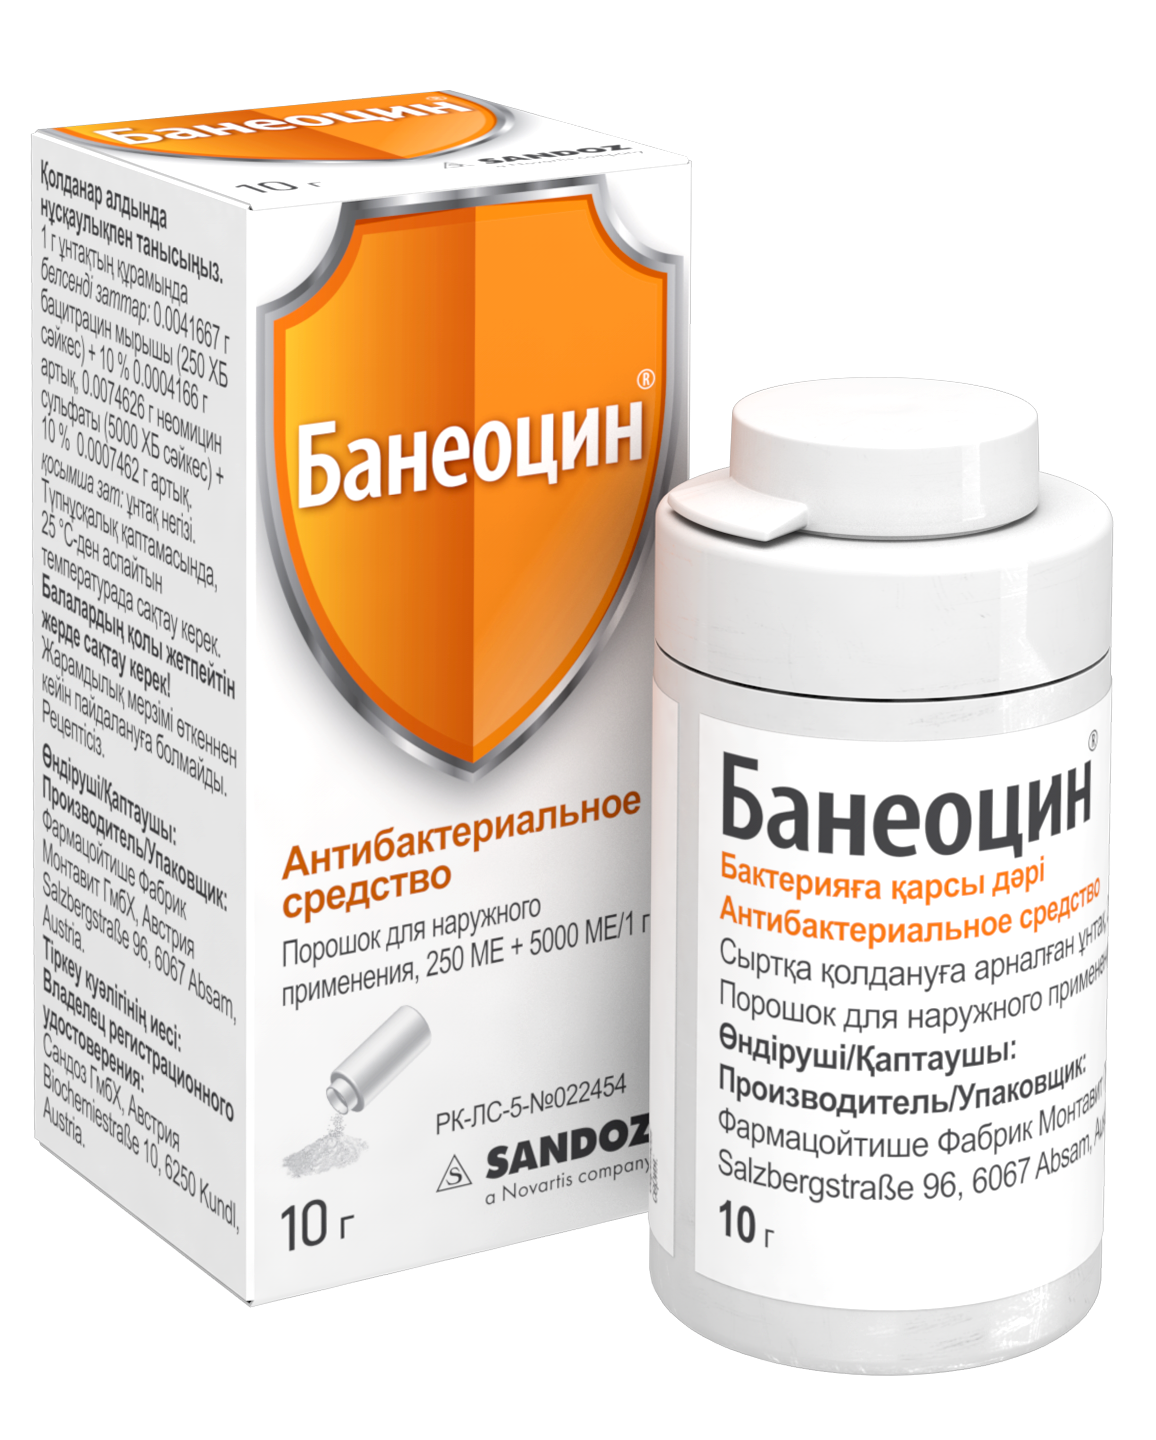 Банеоцин порошок для наружного применения отзывы